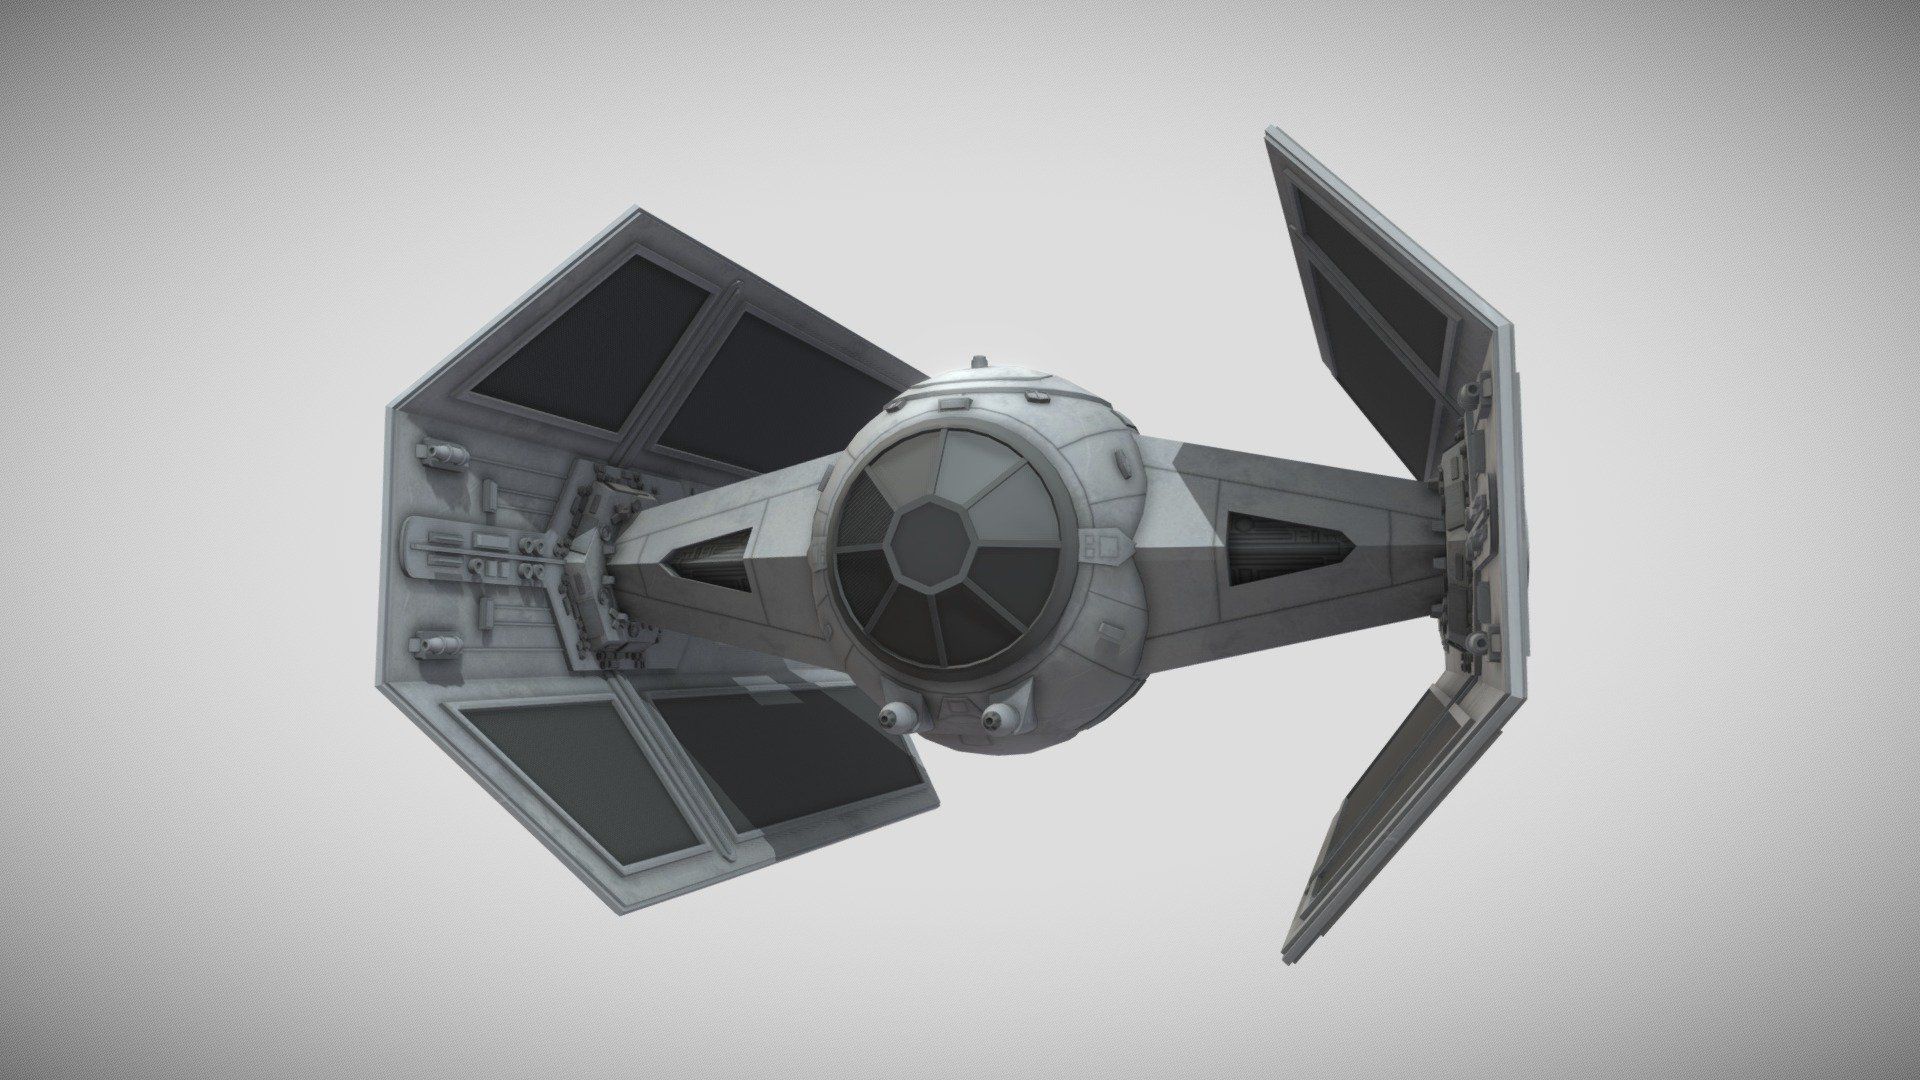 TIE Advanced x1 (Vader's TIE) Wars model by Quiznos323 [98f1dec]